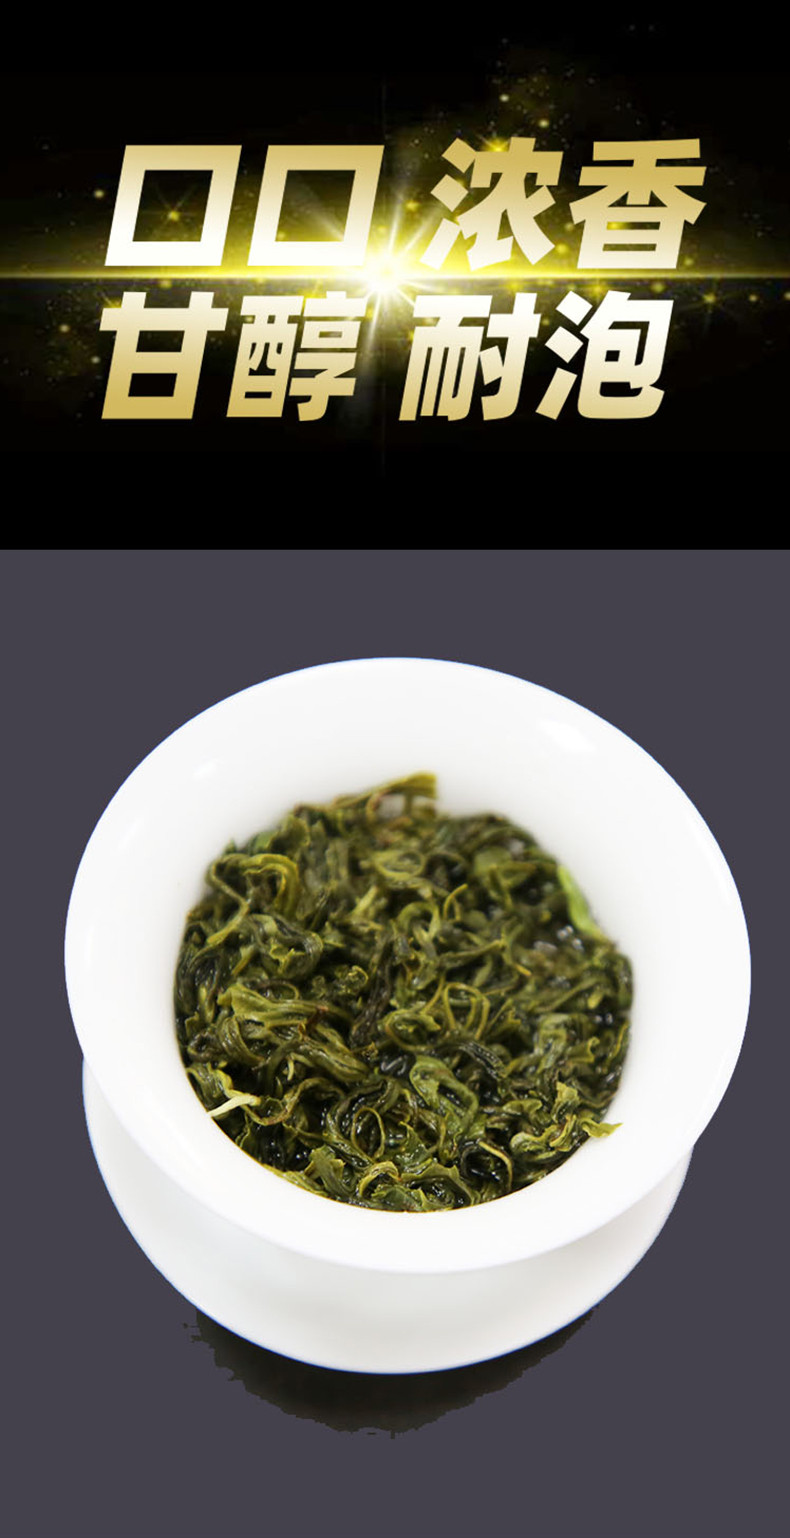 邮政农品 三江绿茶芸香茶250g罐装春茶新茶叶正宗